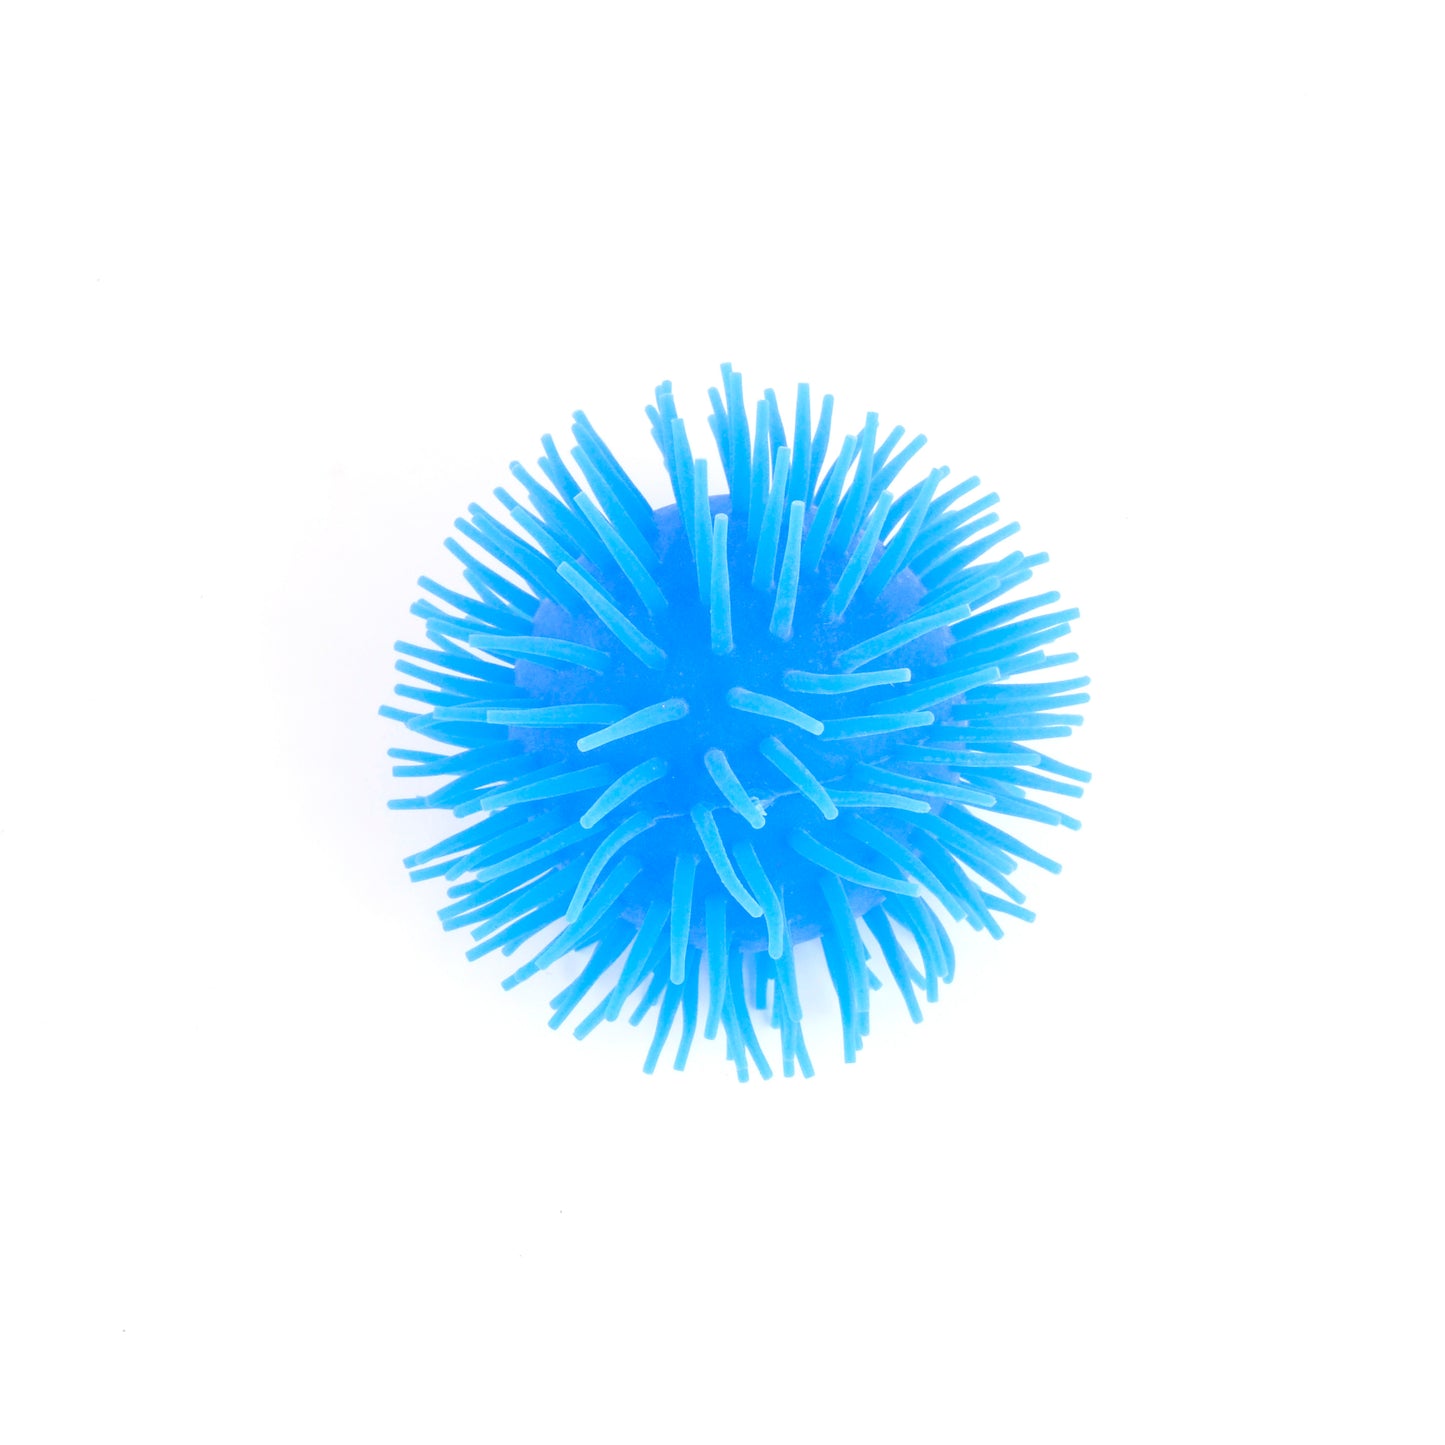 KaiserKids Spiky Squish Ball - BLUE